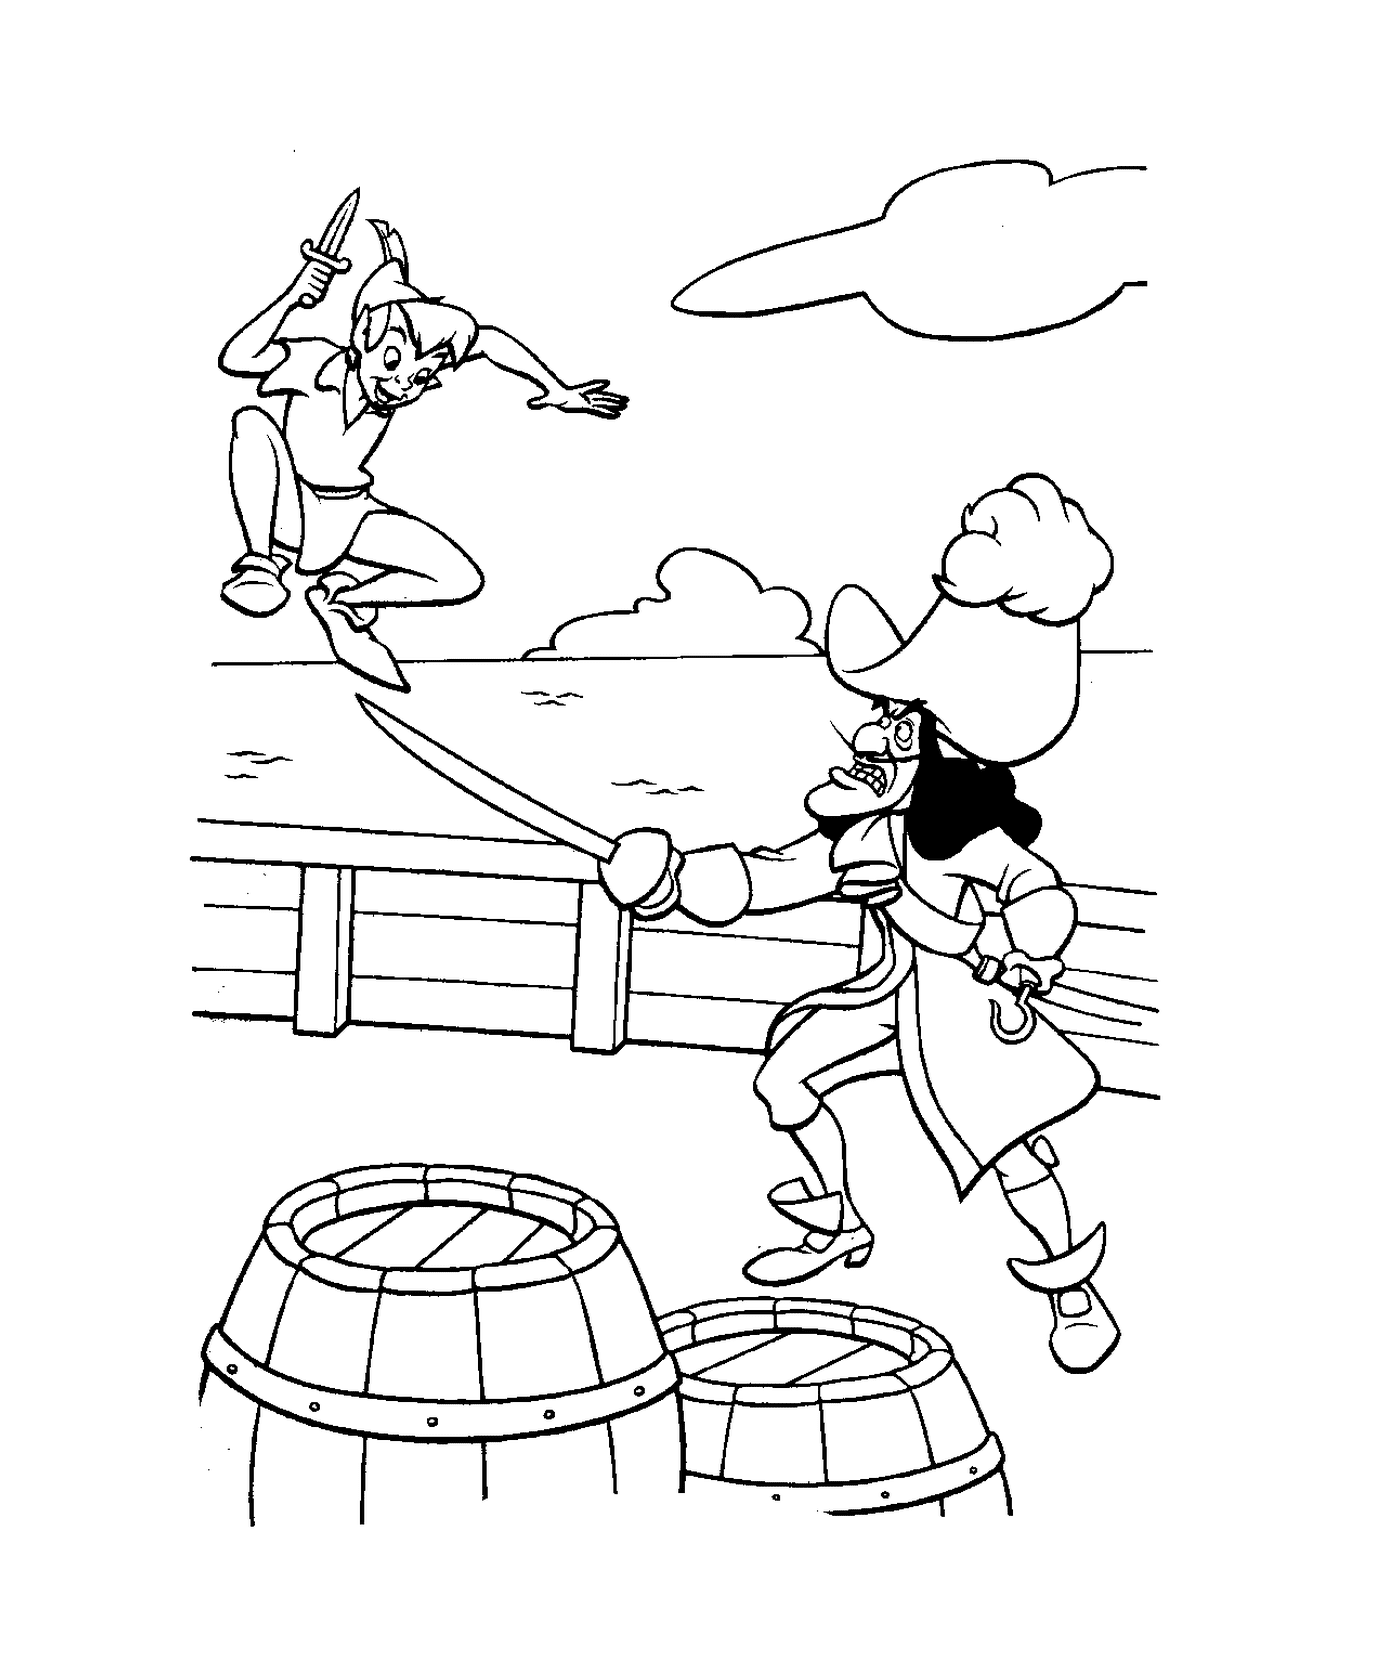  Питер Пан сражается с пиратом на лодке 